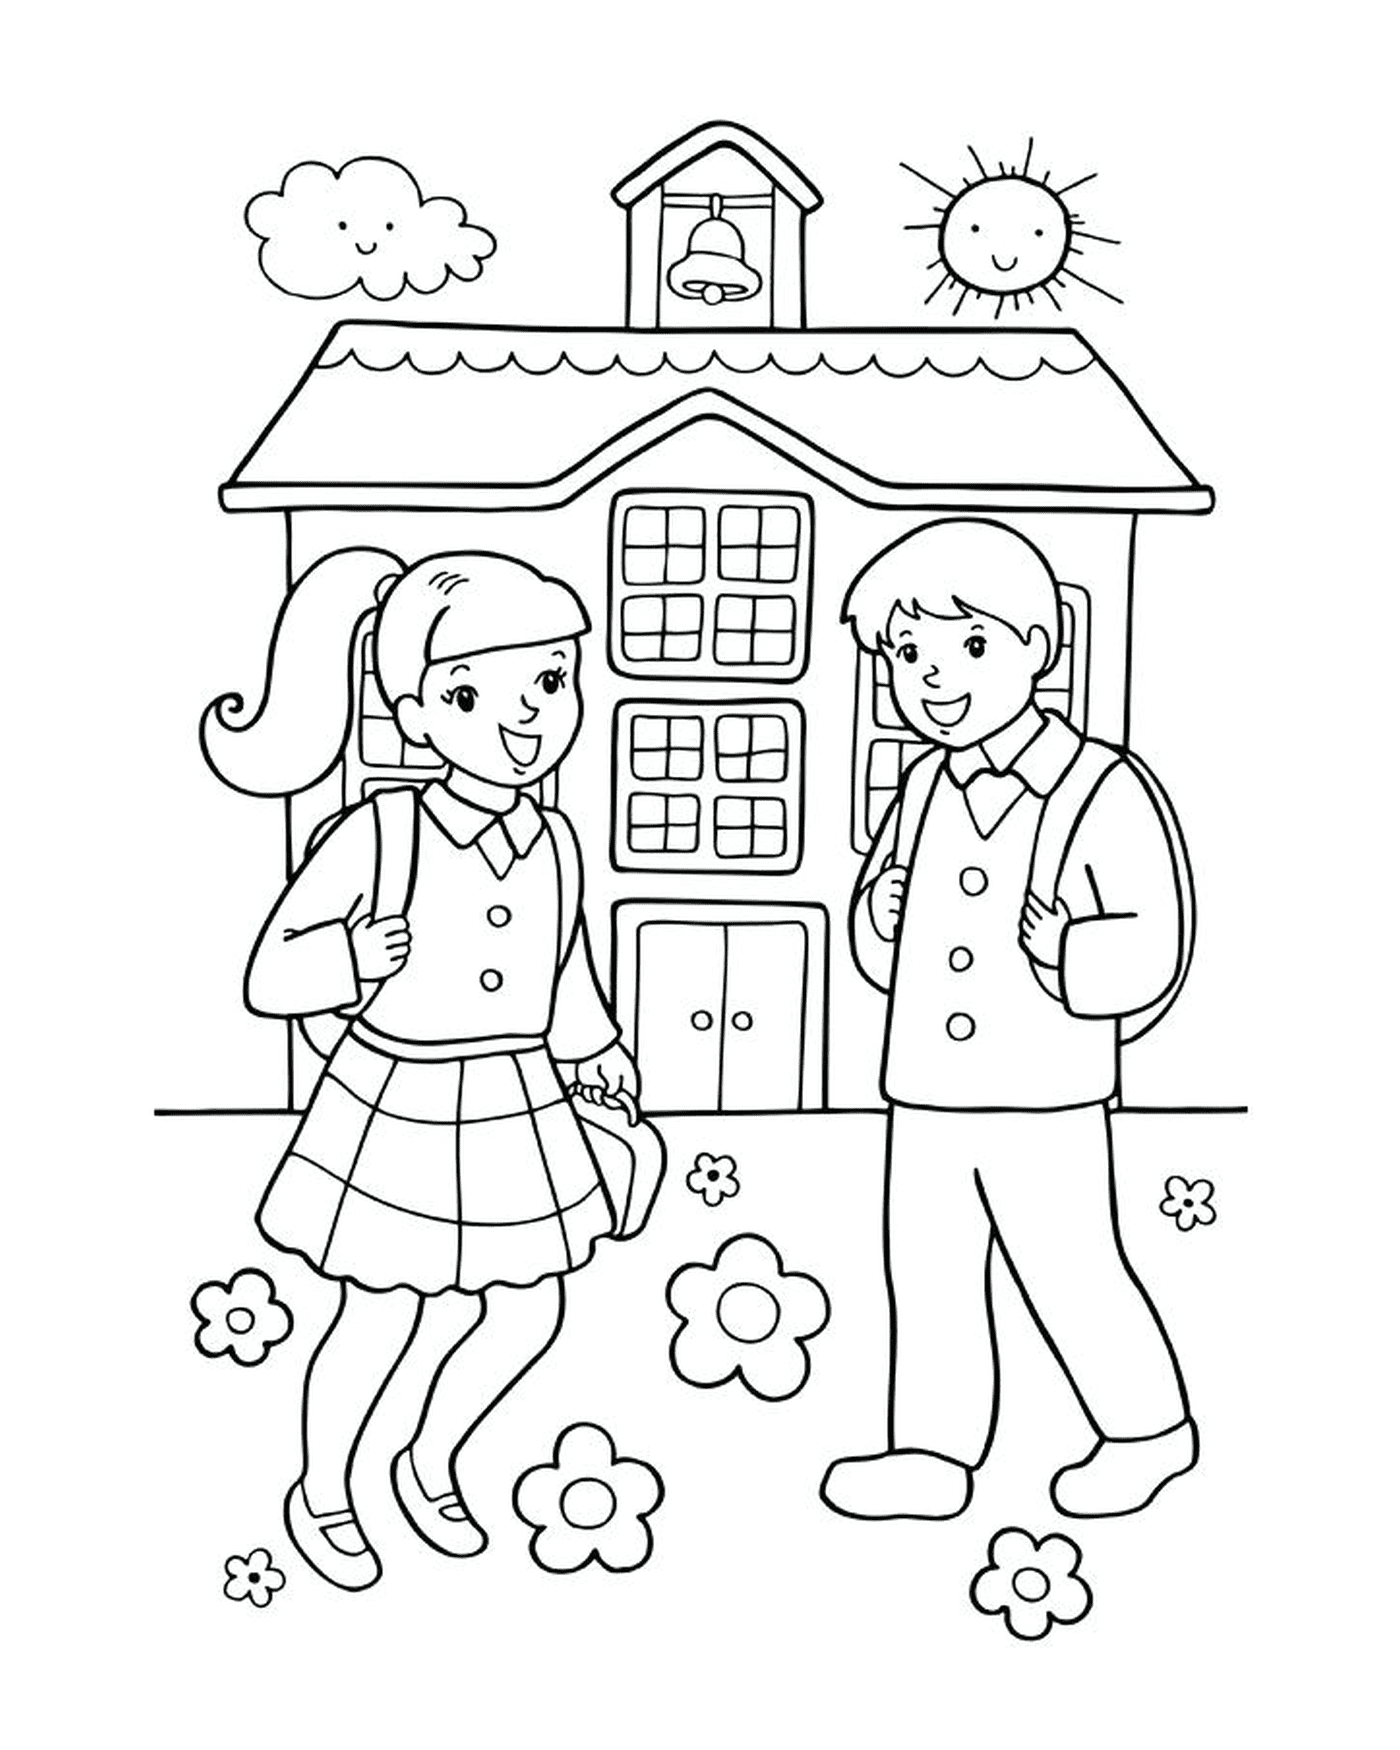  Una chica y un chico de vuelta a la escuela 